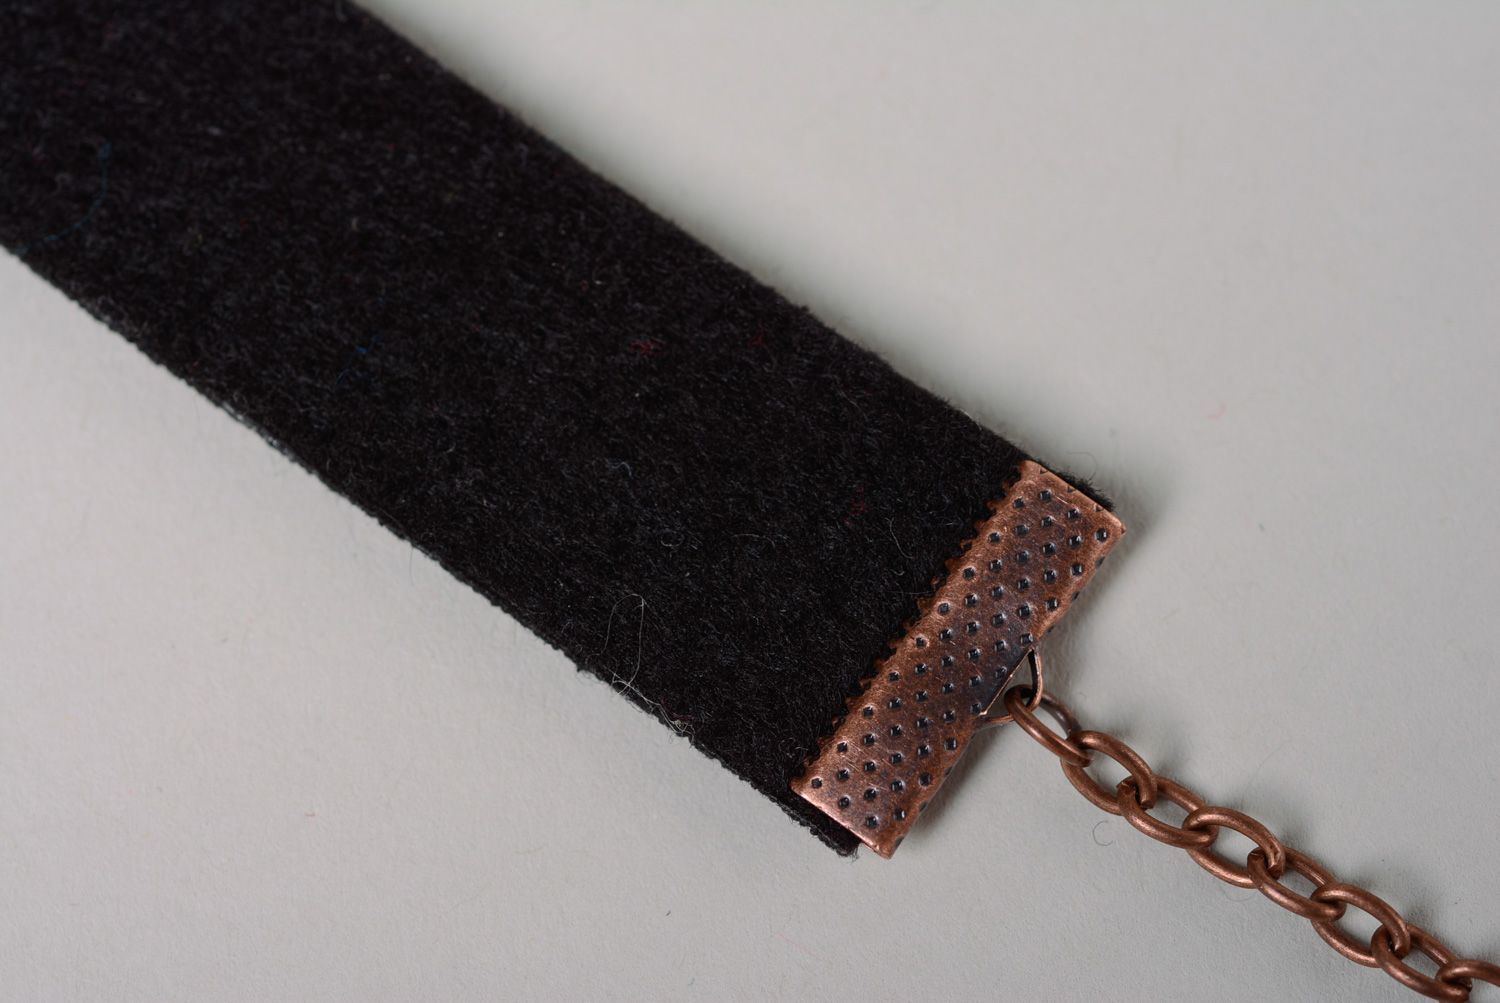 Textil Armband mit Kreuzstichstickerei foto 5